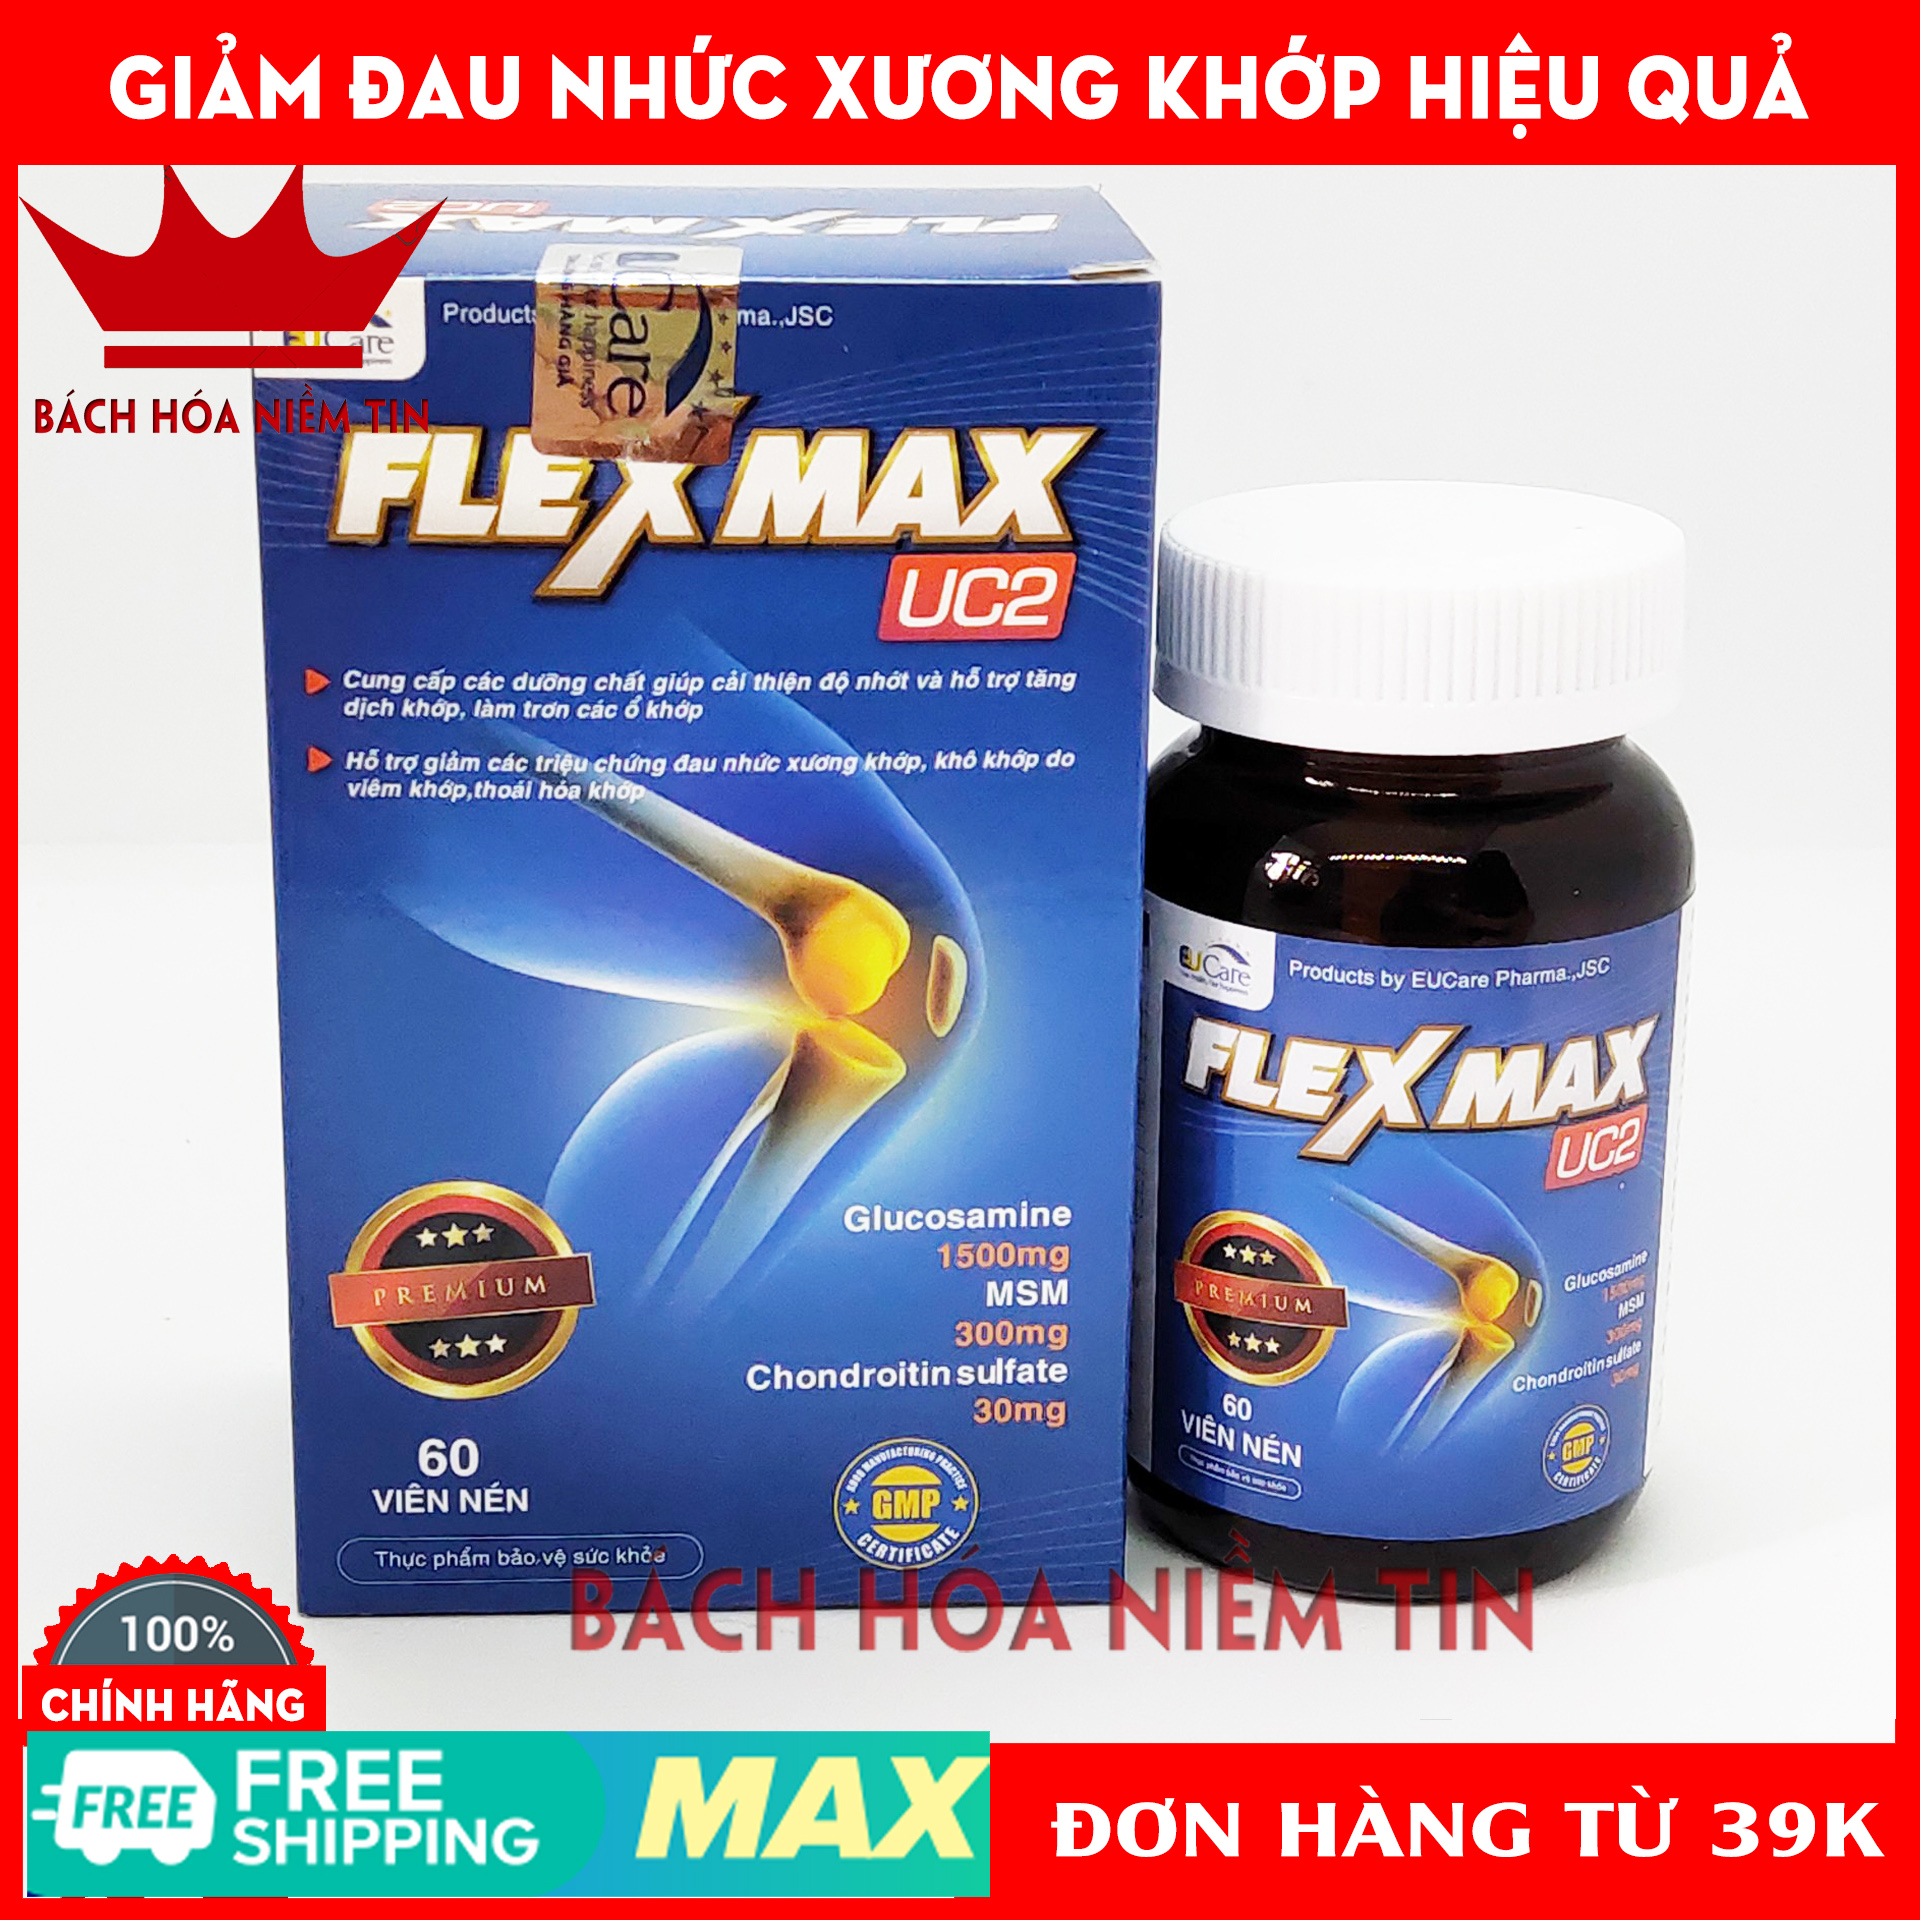 FLEXMAX UC2 - Glucosamin 1500mg - Giảm đau khớp, viêm khớp